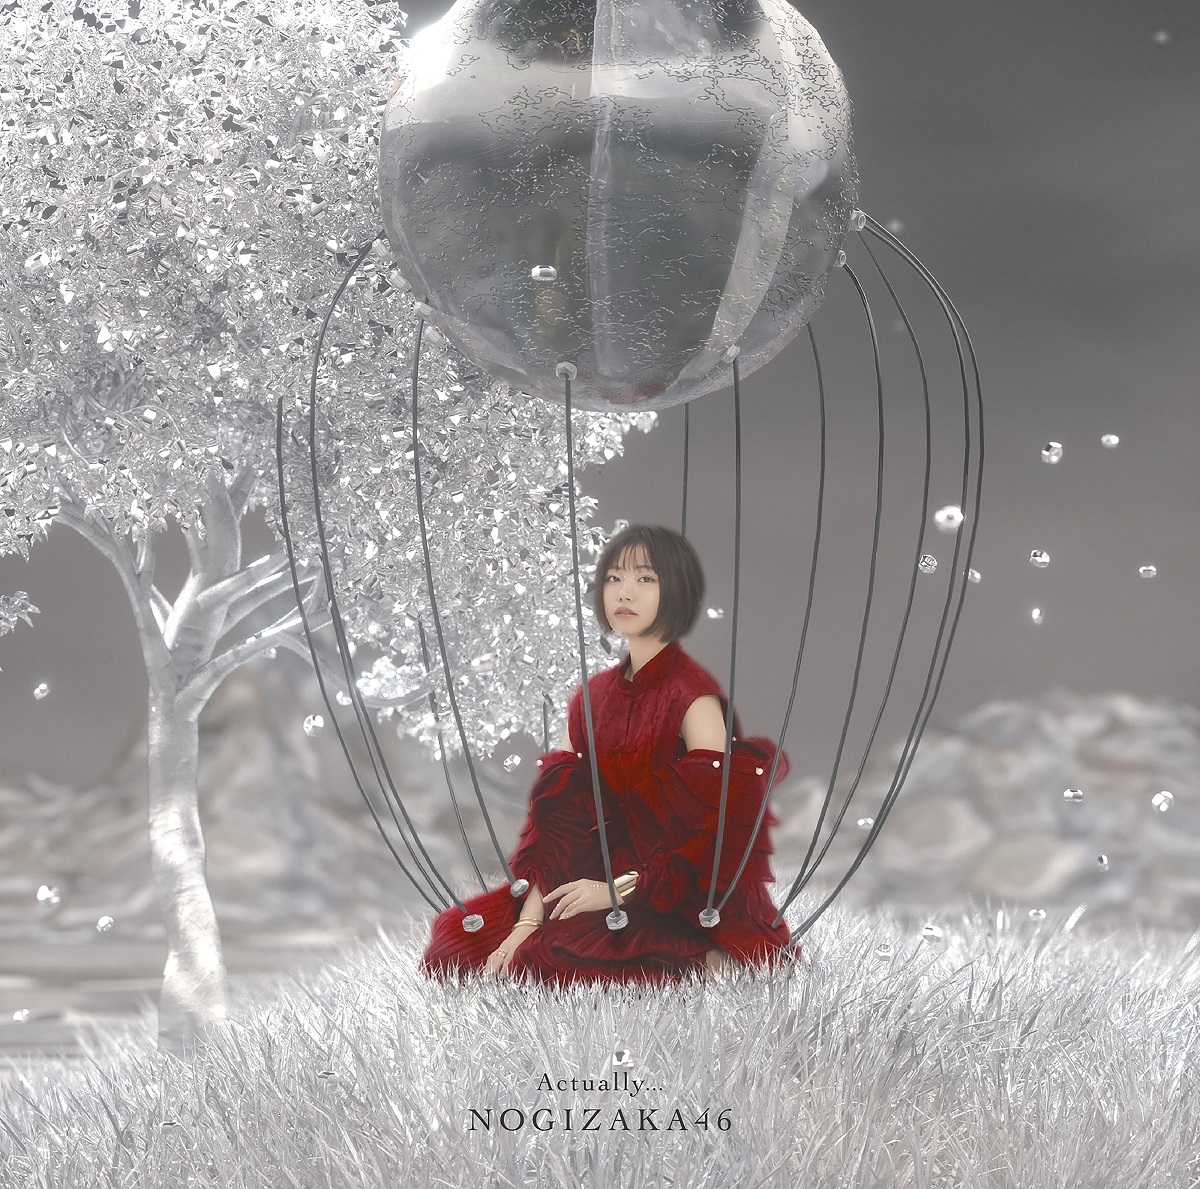 Estas son las portadas del nuevo single de Nogizaka, 'Actually...' 

Esta es la portada del Type A

#29hシングル 
#Actually
#乃木坂46